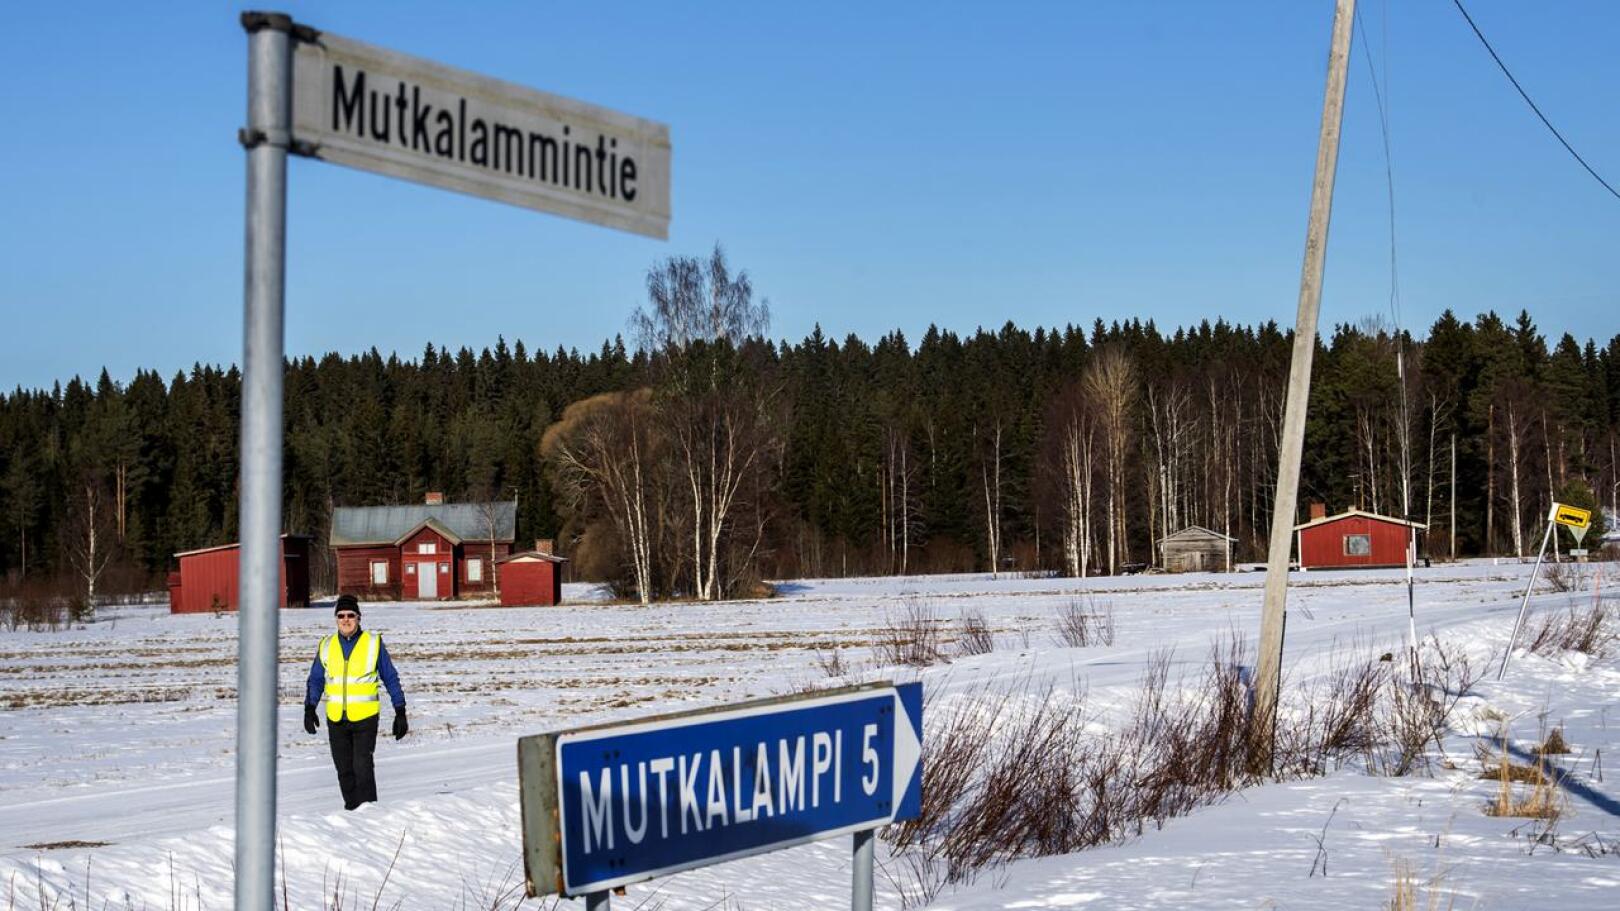 Ely-keskus aikoo kunnostaa Mutkalammintien soratieksi. Kuvassa Jouko Överman kahdeksan kilometrin kävelylenkillä.